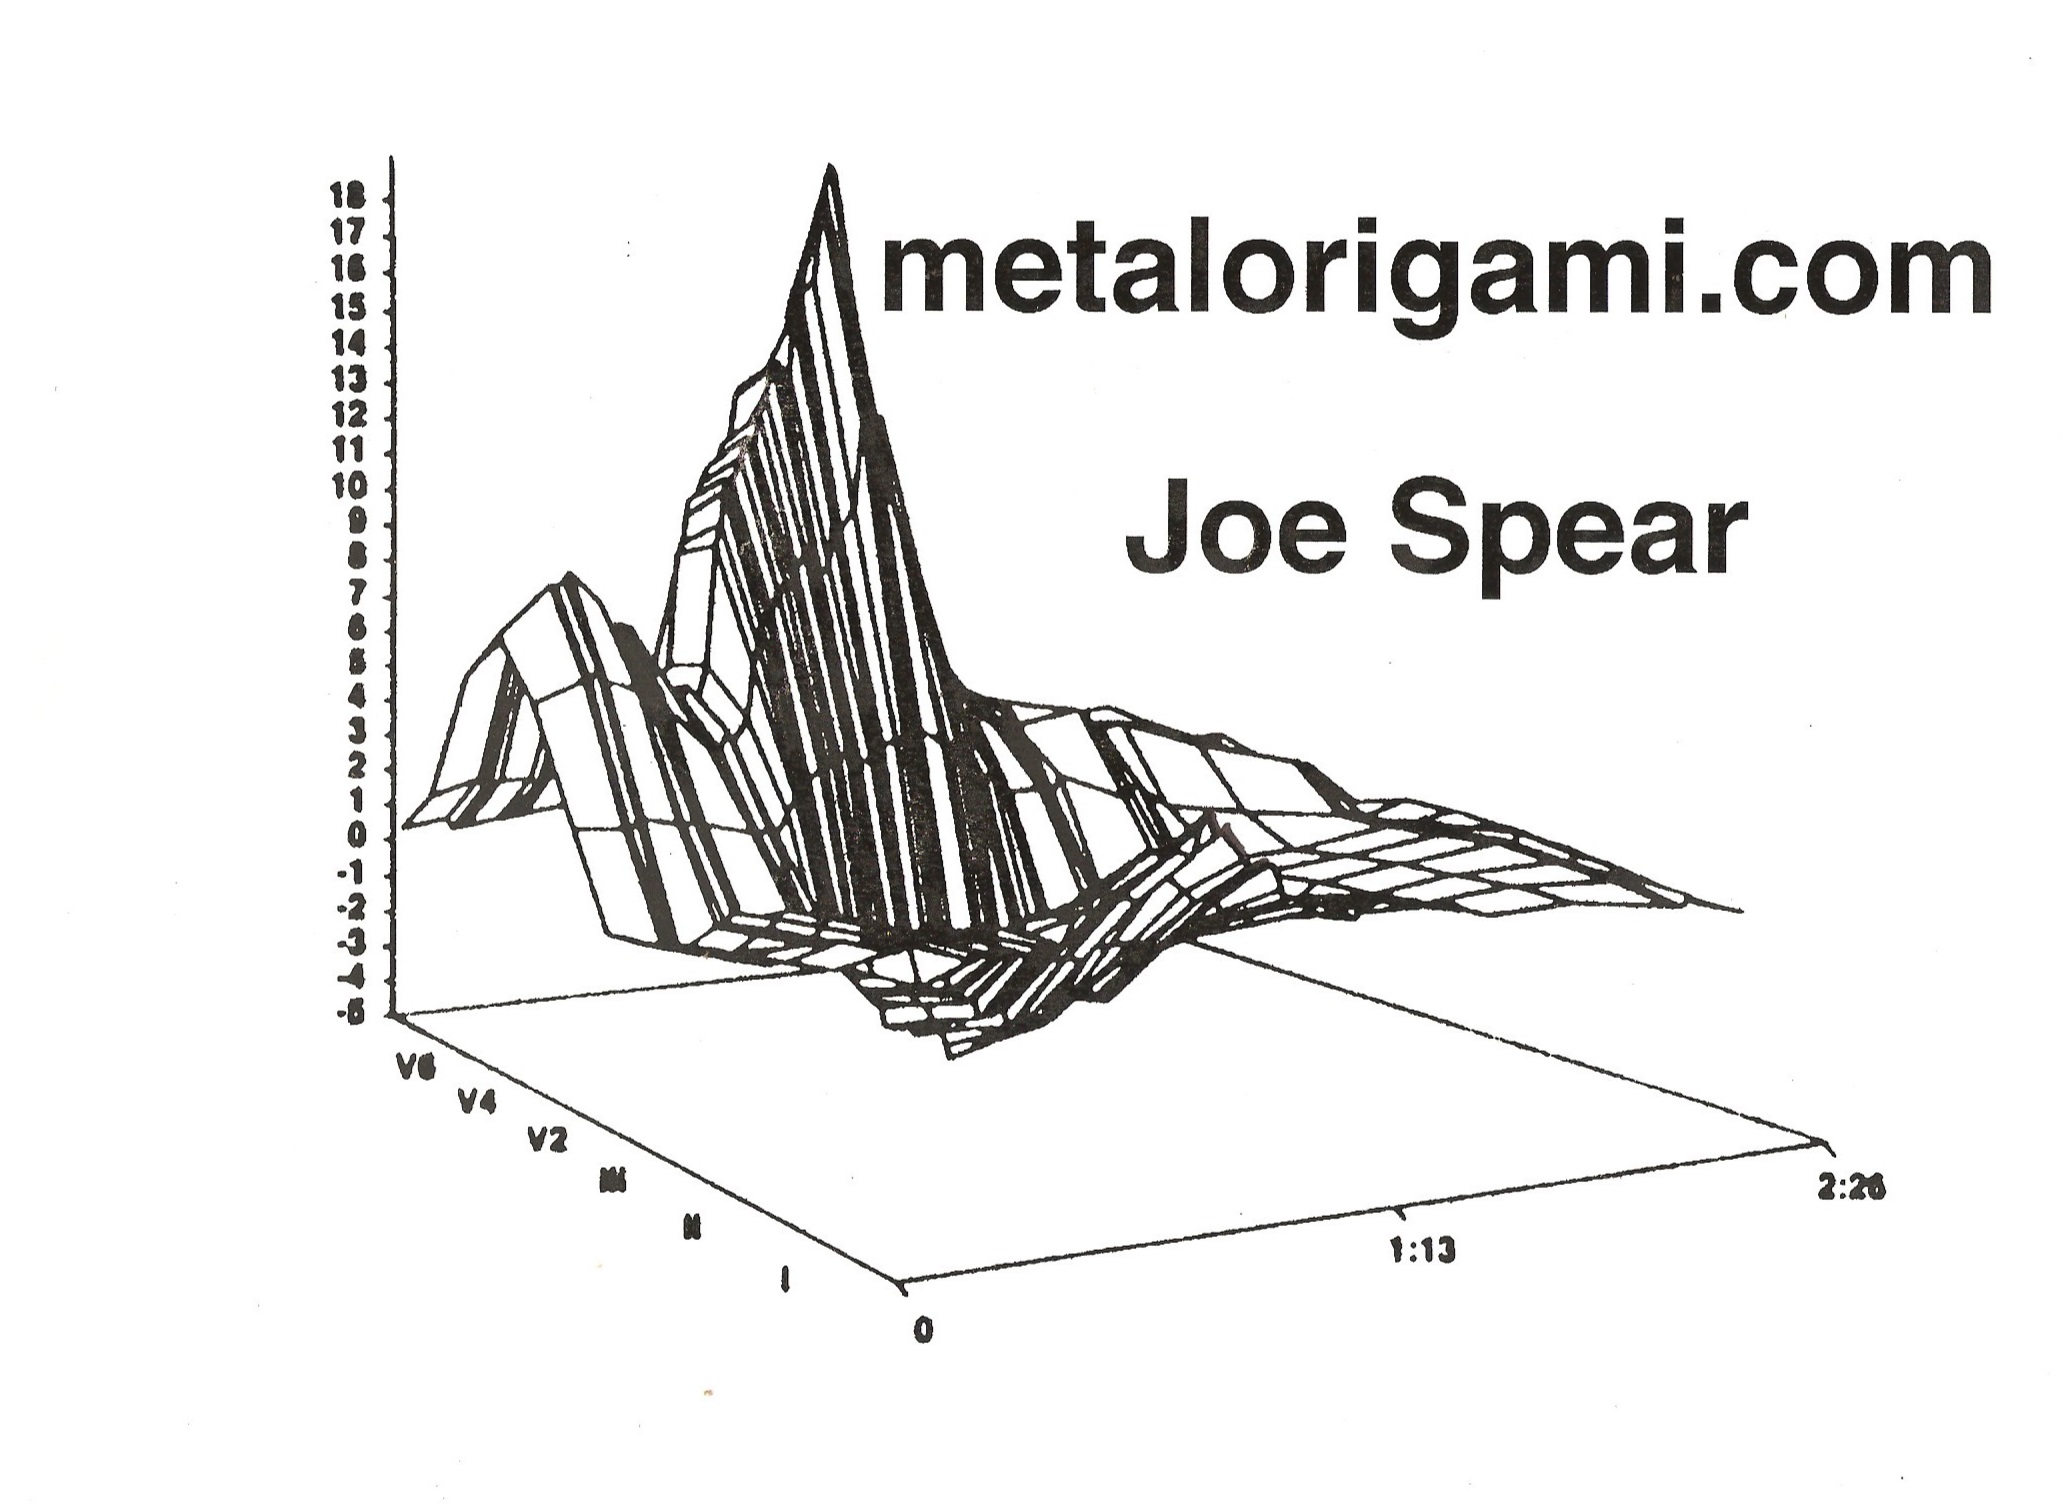 metal origami